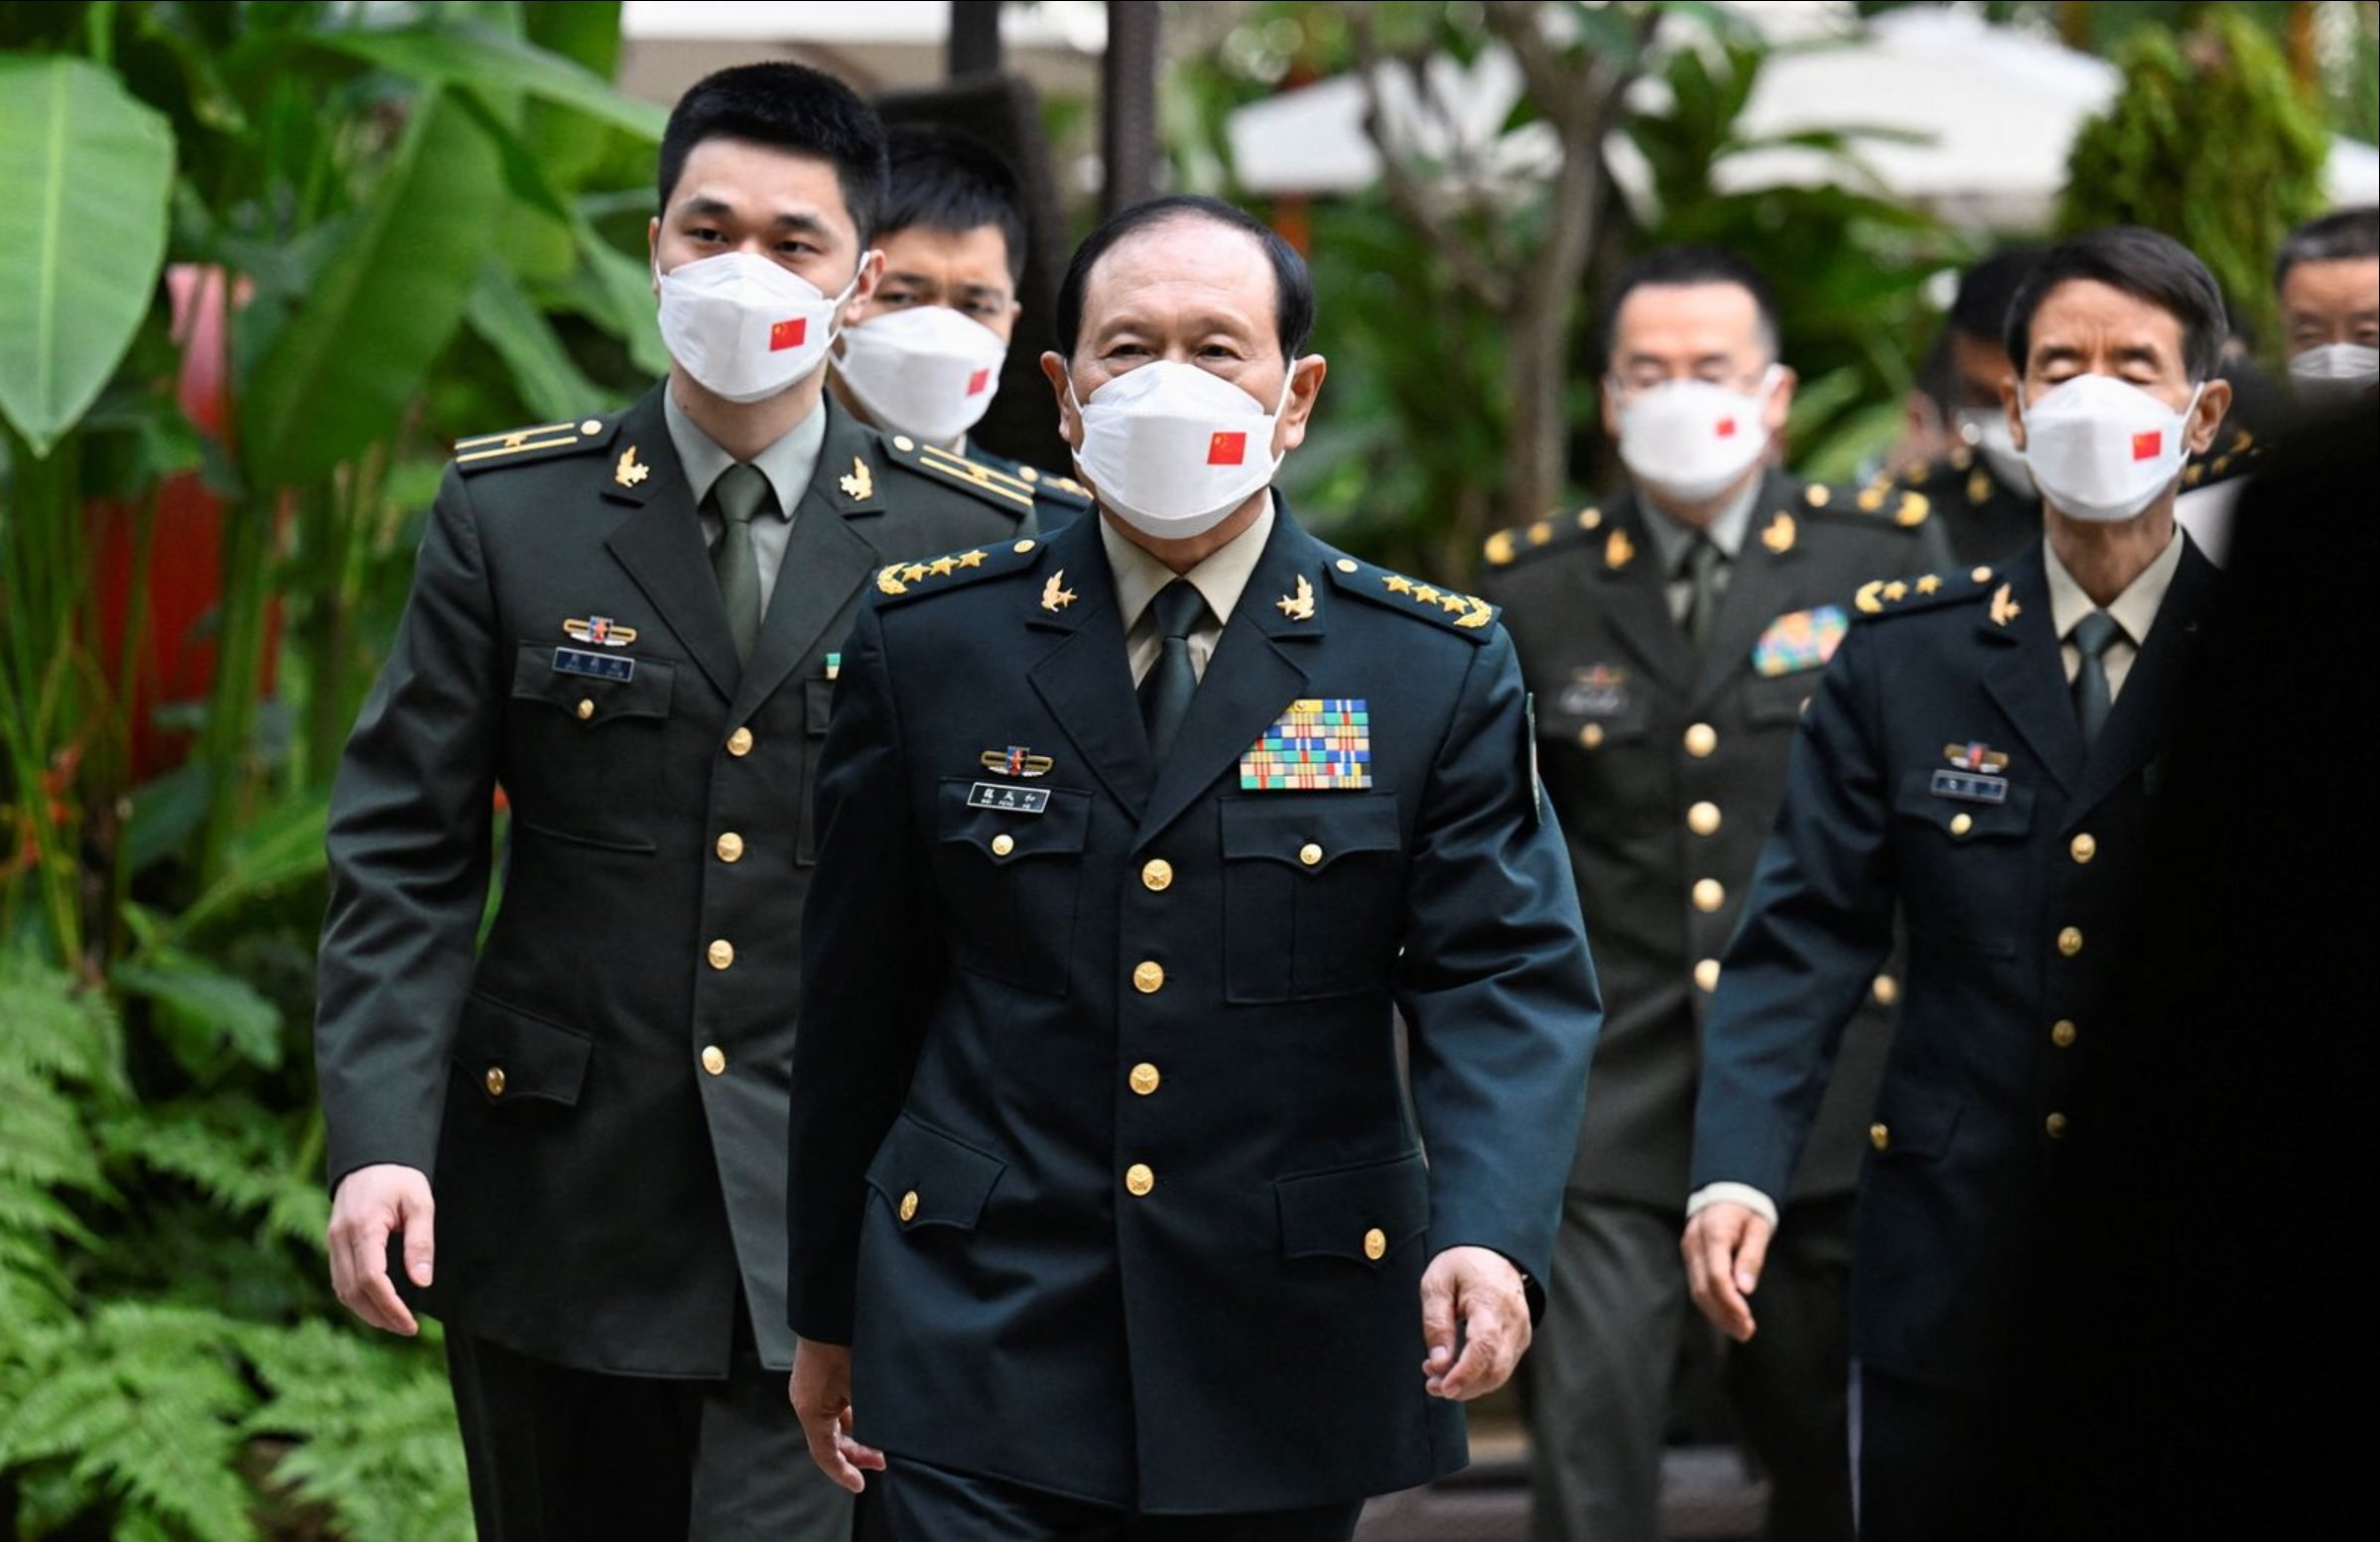 Міністр оборони Китаю погрожує війною, якщо Тайвань відокремиться - Spiegel